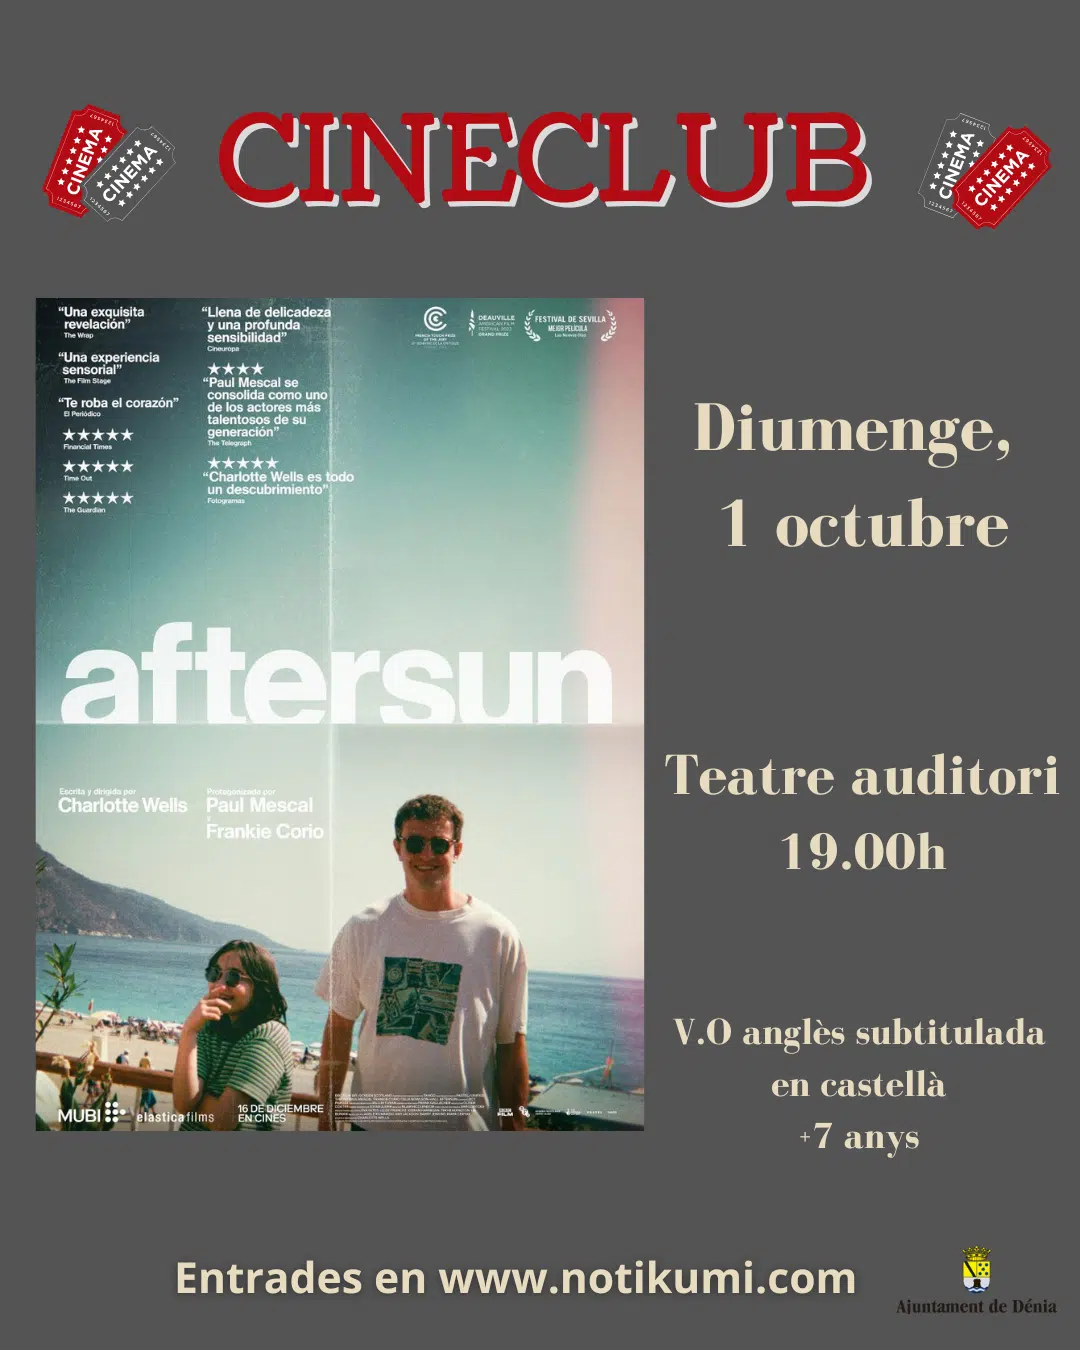 Cineclub: Aftersun